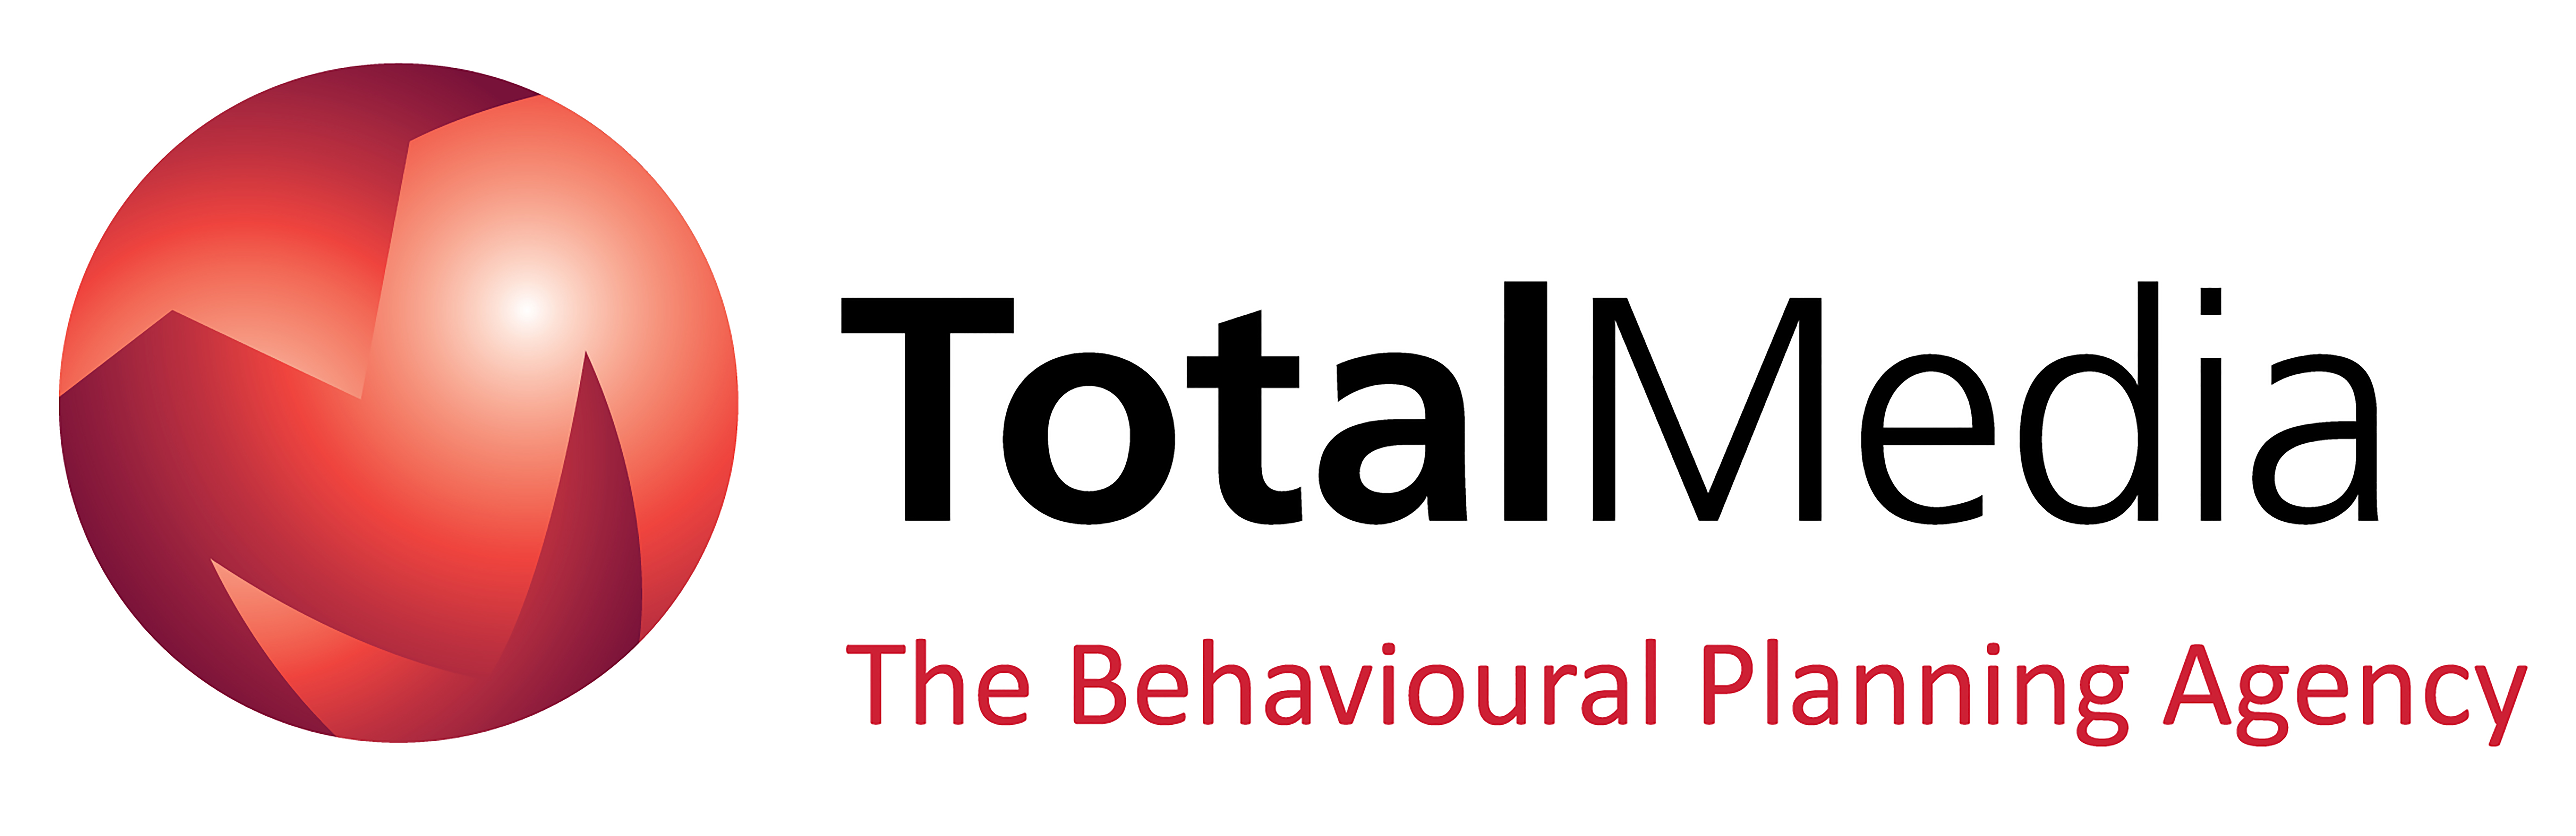 logo for Total Media